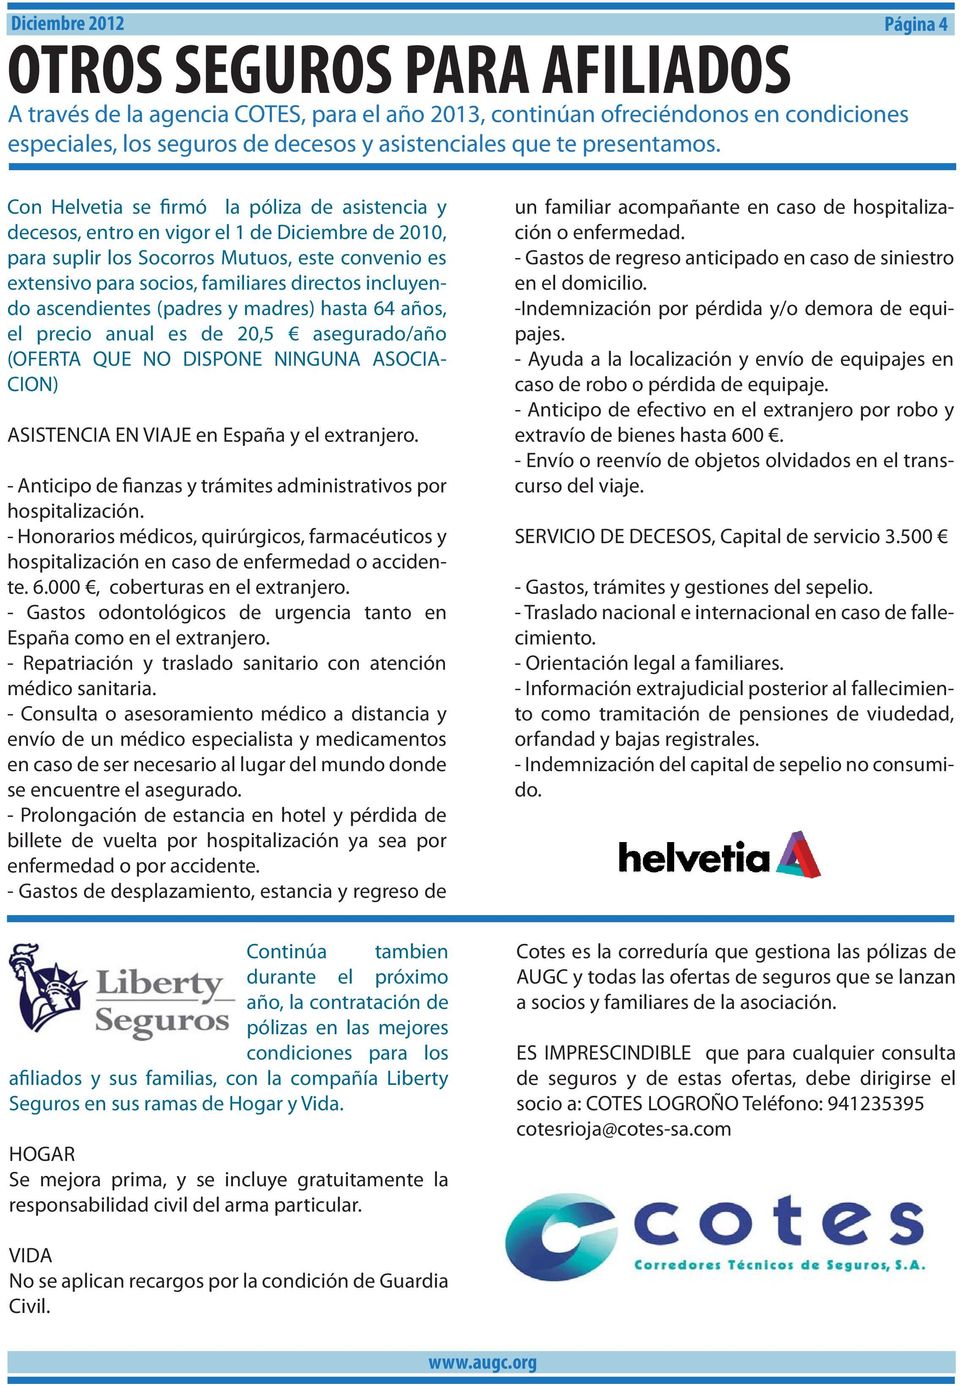 Con Helvetia se firmó la póliza de asistencia y decesos, entro en vigor el 1 de Diciembre de 2010, para suplir los Socorros Mutuos, este convenio es extensivo para socios, familiares directos